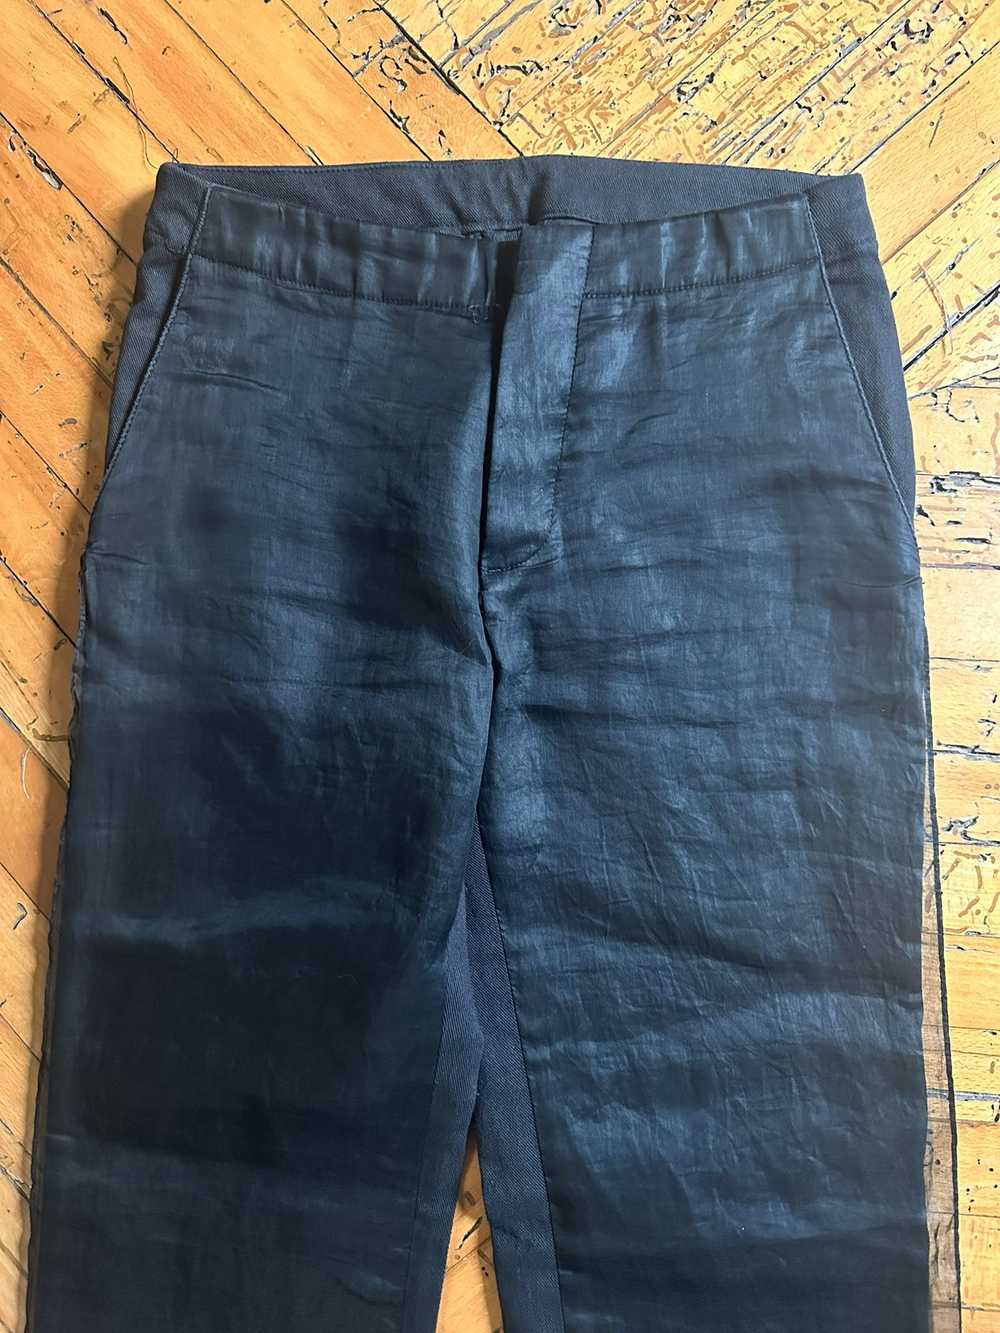 Helmut Lang AW1997 Layered Chiffon Jeans - image 4